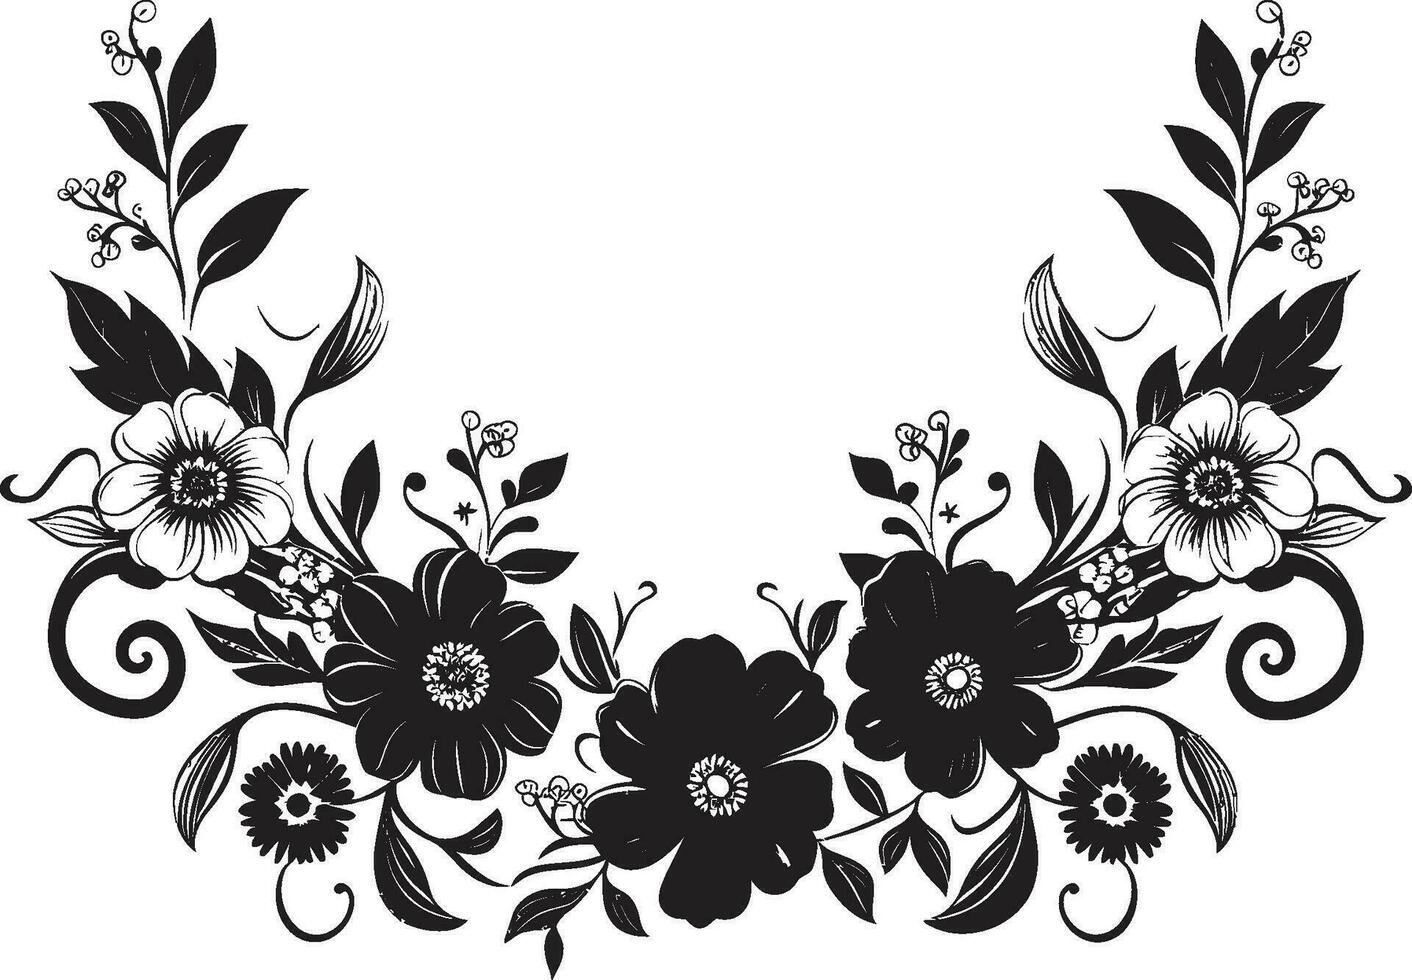 strahlend handgemacht Ranke ikonisch Logo Symbol mystisch Blumen- Eleganz Hand gezeichnet Vektor Symbol